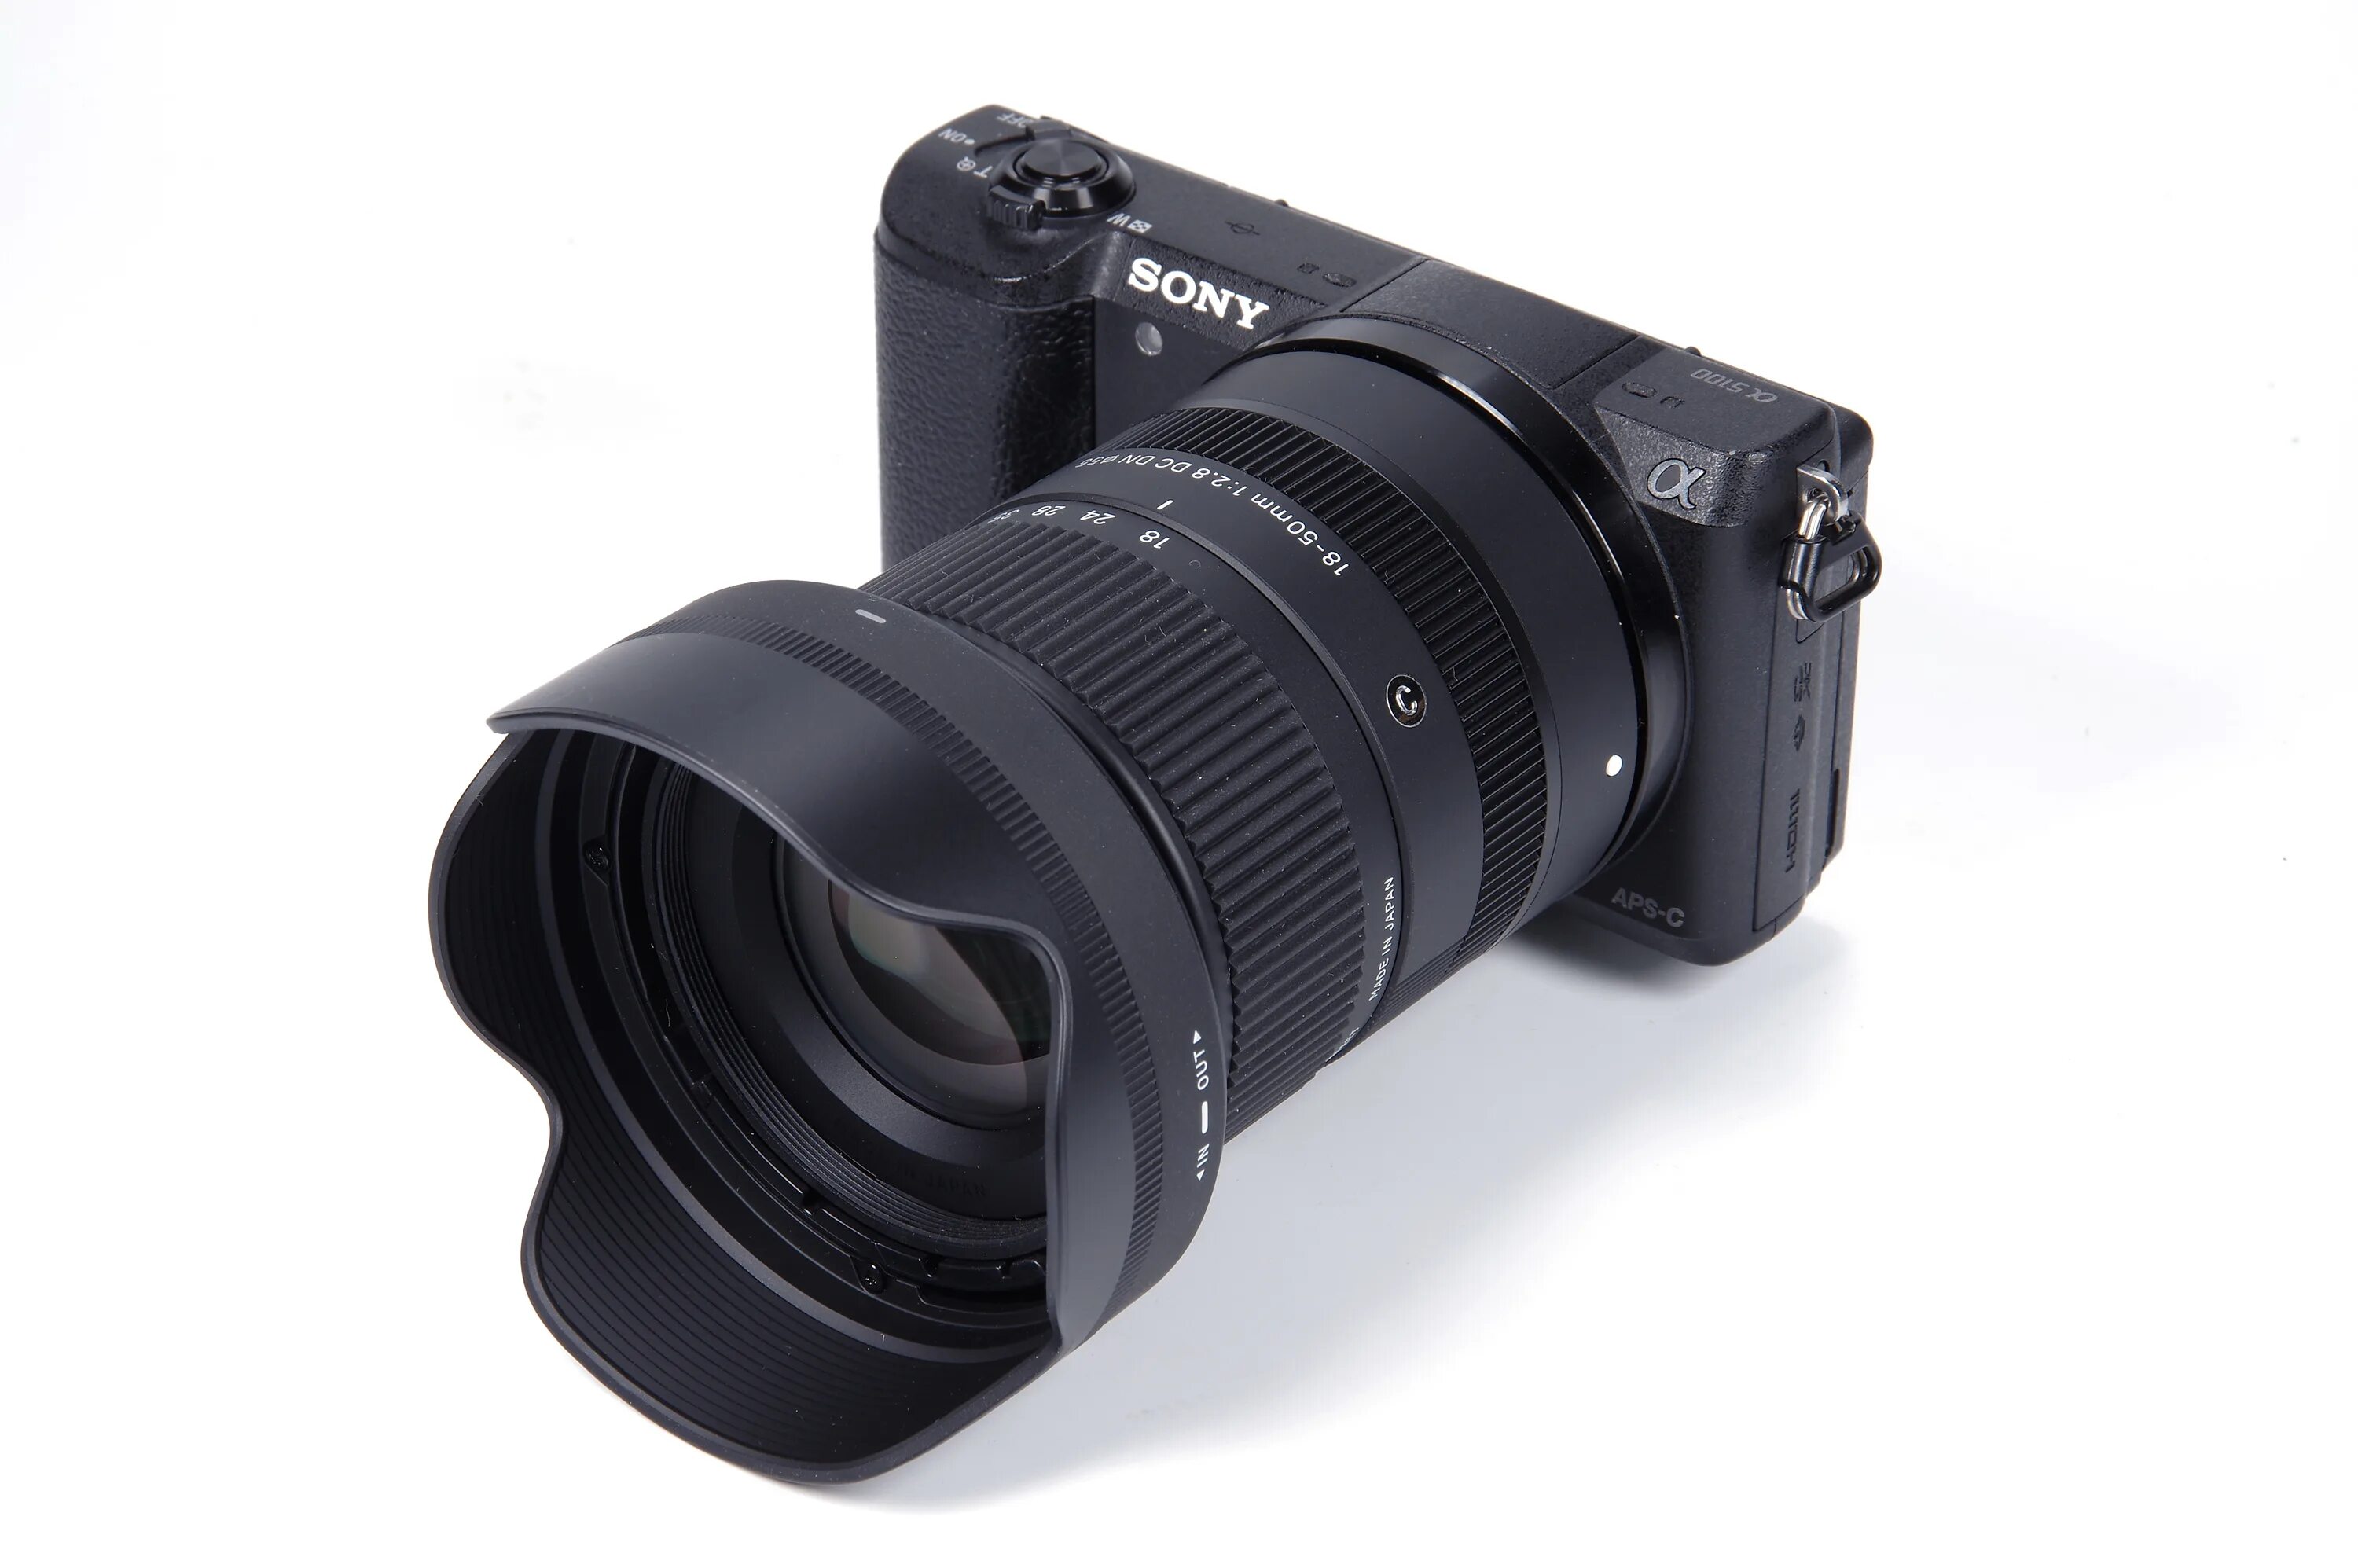 18 50mm f 2.8 dc dn. Sigma 18-50 Sony e. Sigma 18-50mm f2.8 Sony e. Sigma 18-50mm f2.8 DC DN (C) Sony e. Sony Sigma 18-50 f2.8 DC DN.